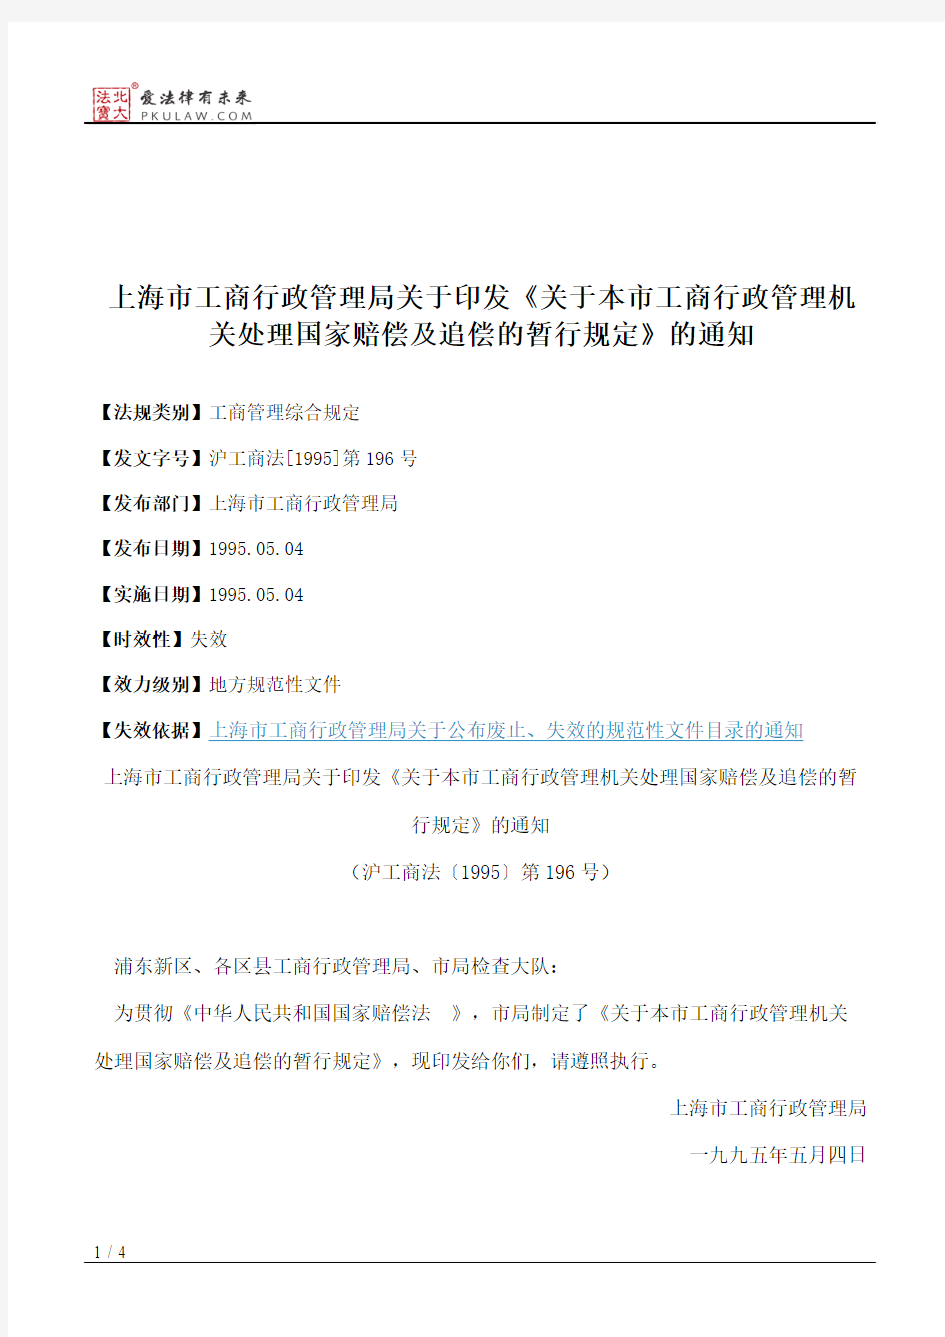 上海市工商行政管理局关于印发《关于本市工商行政管理机关处理国